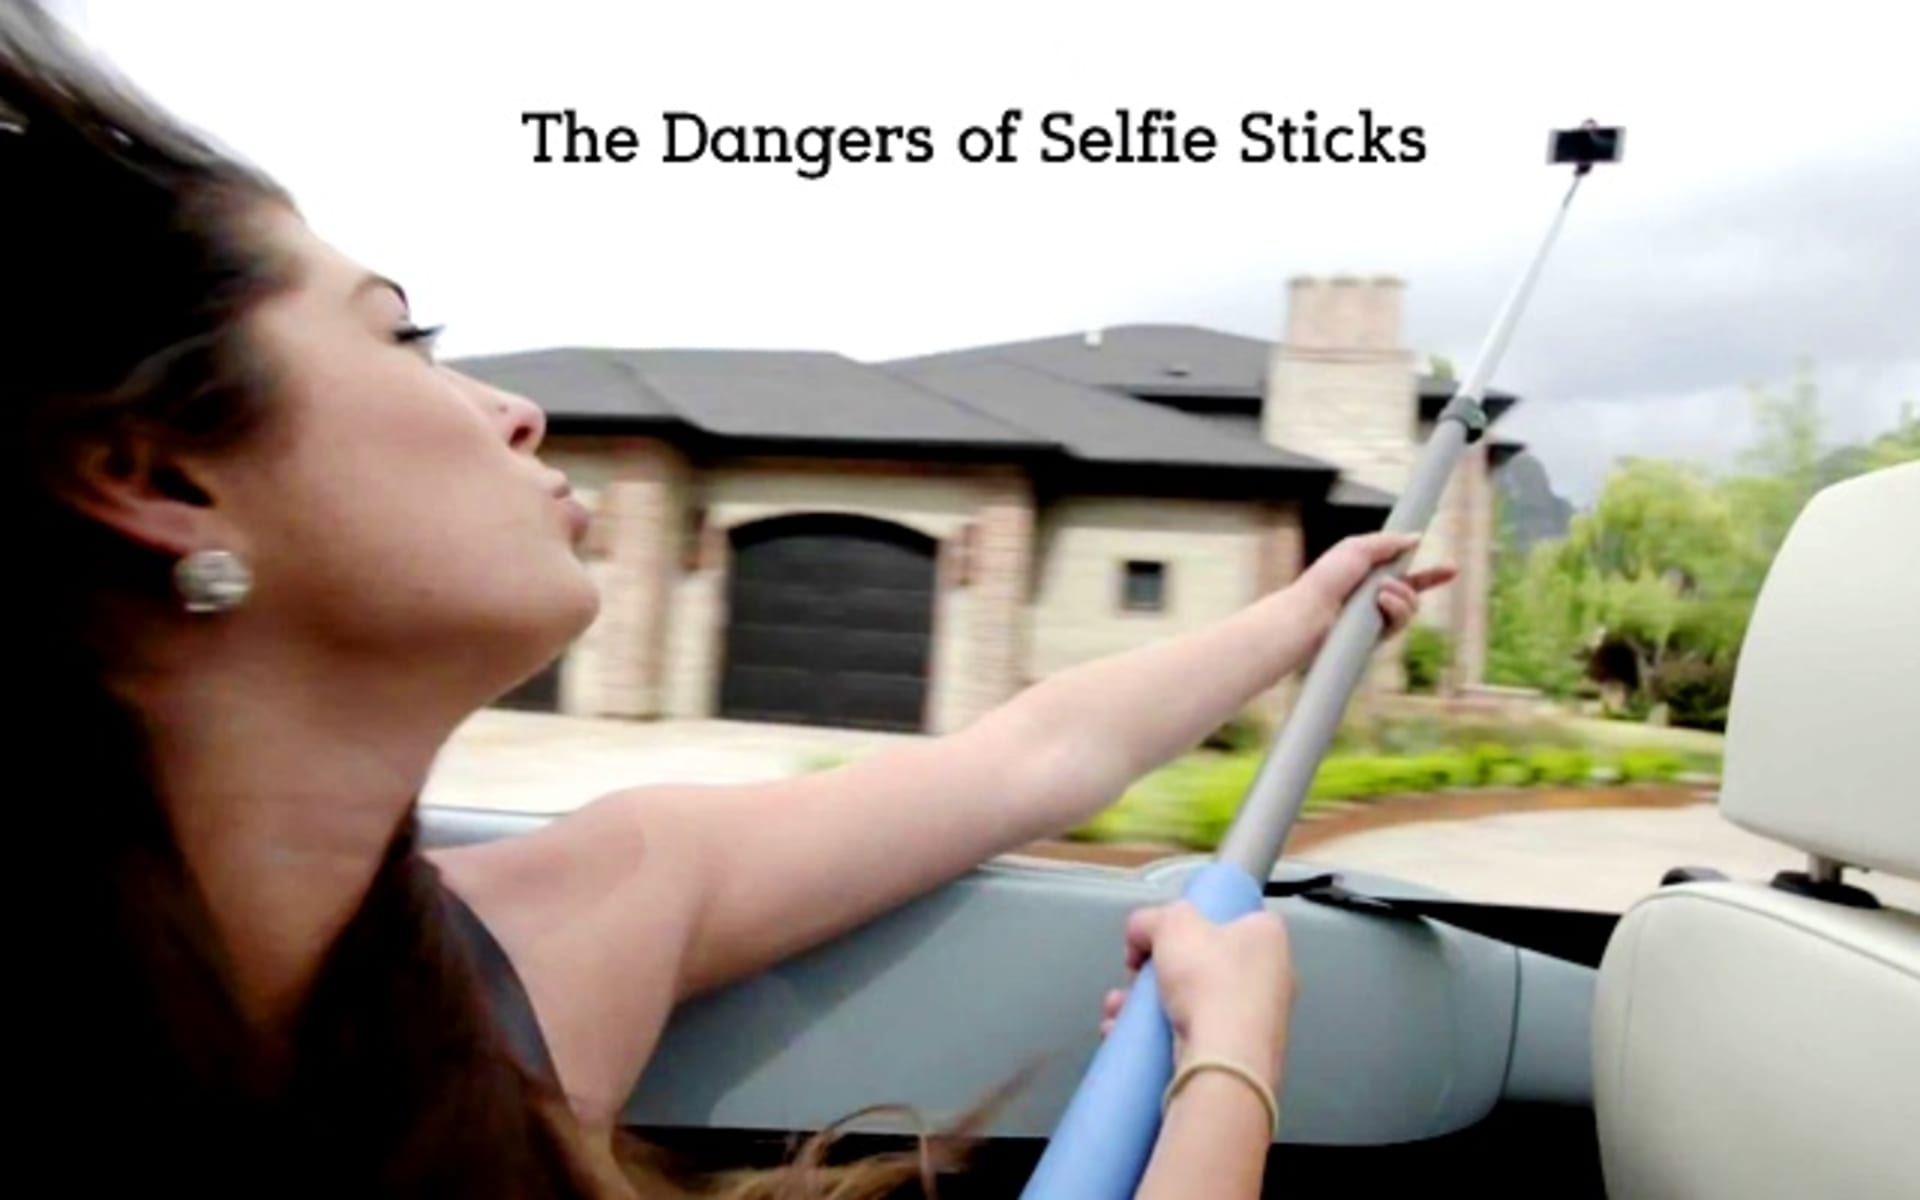 Nový trend selfie tyč - Nebezpečná věc!